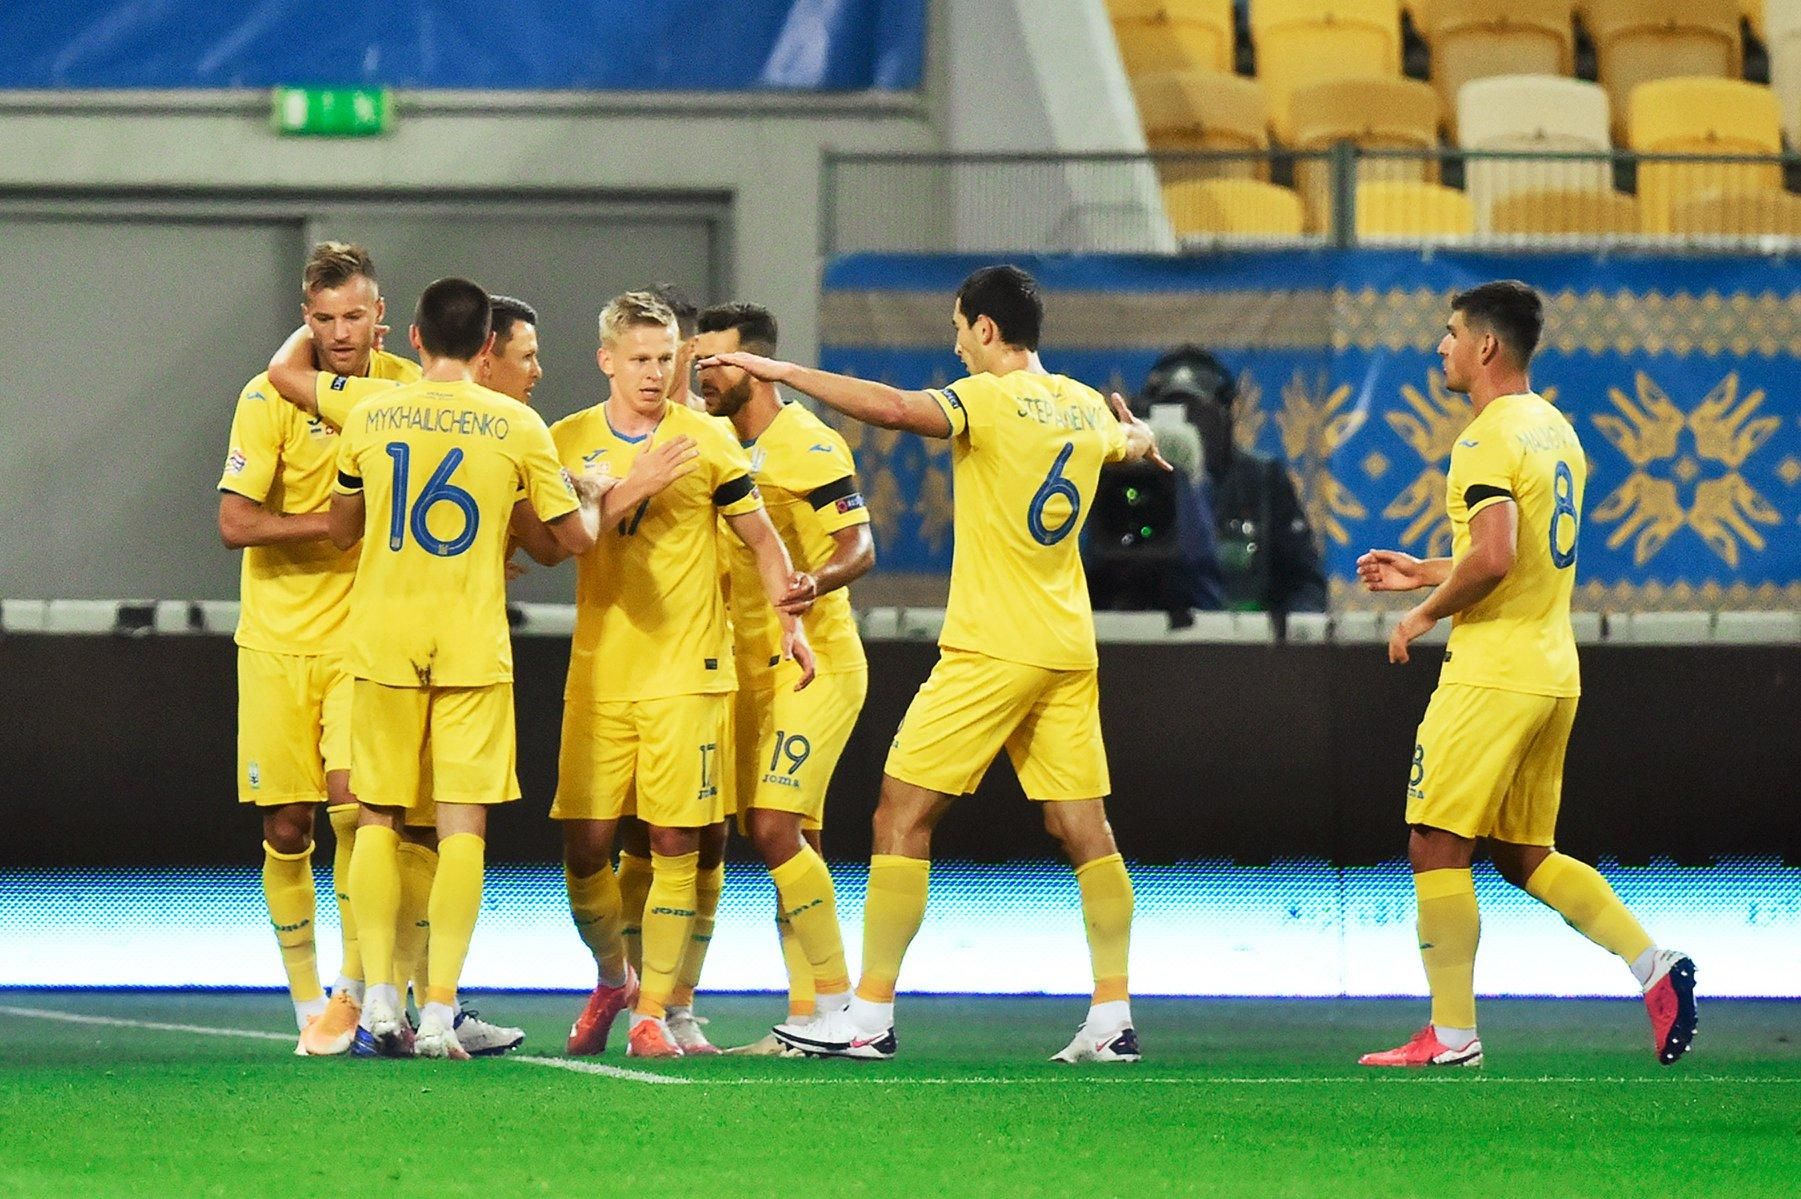 Футболистов сборной Украины на матче будут представлять детскими рисунками